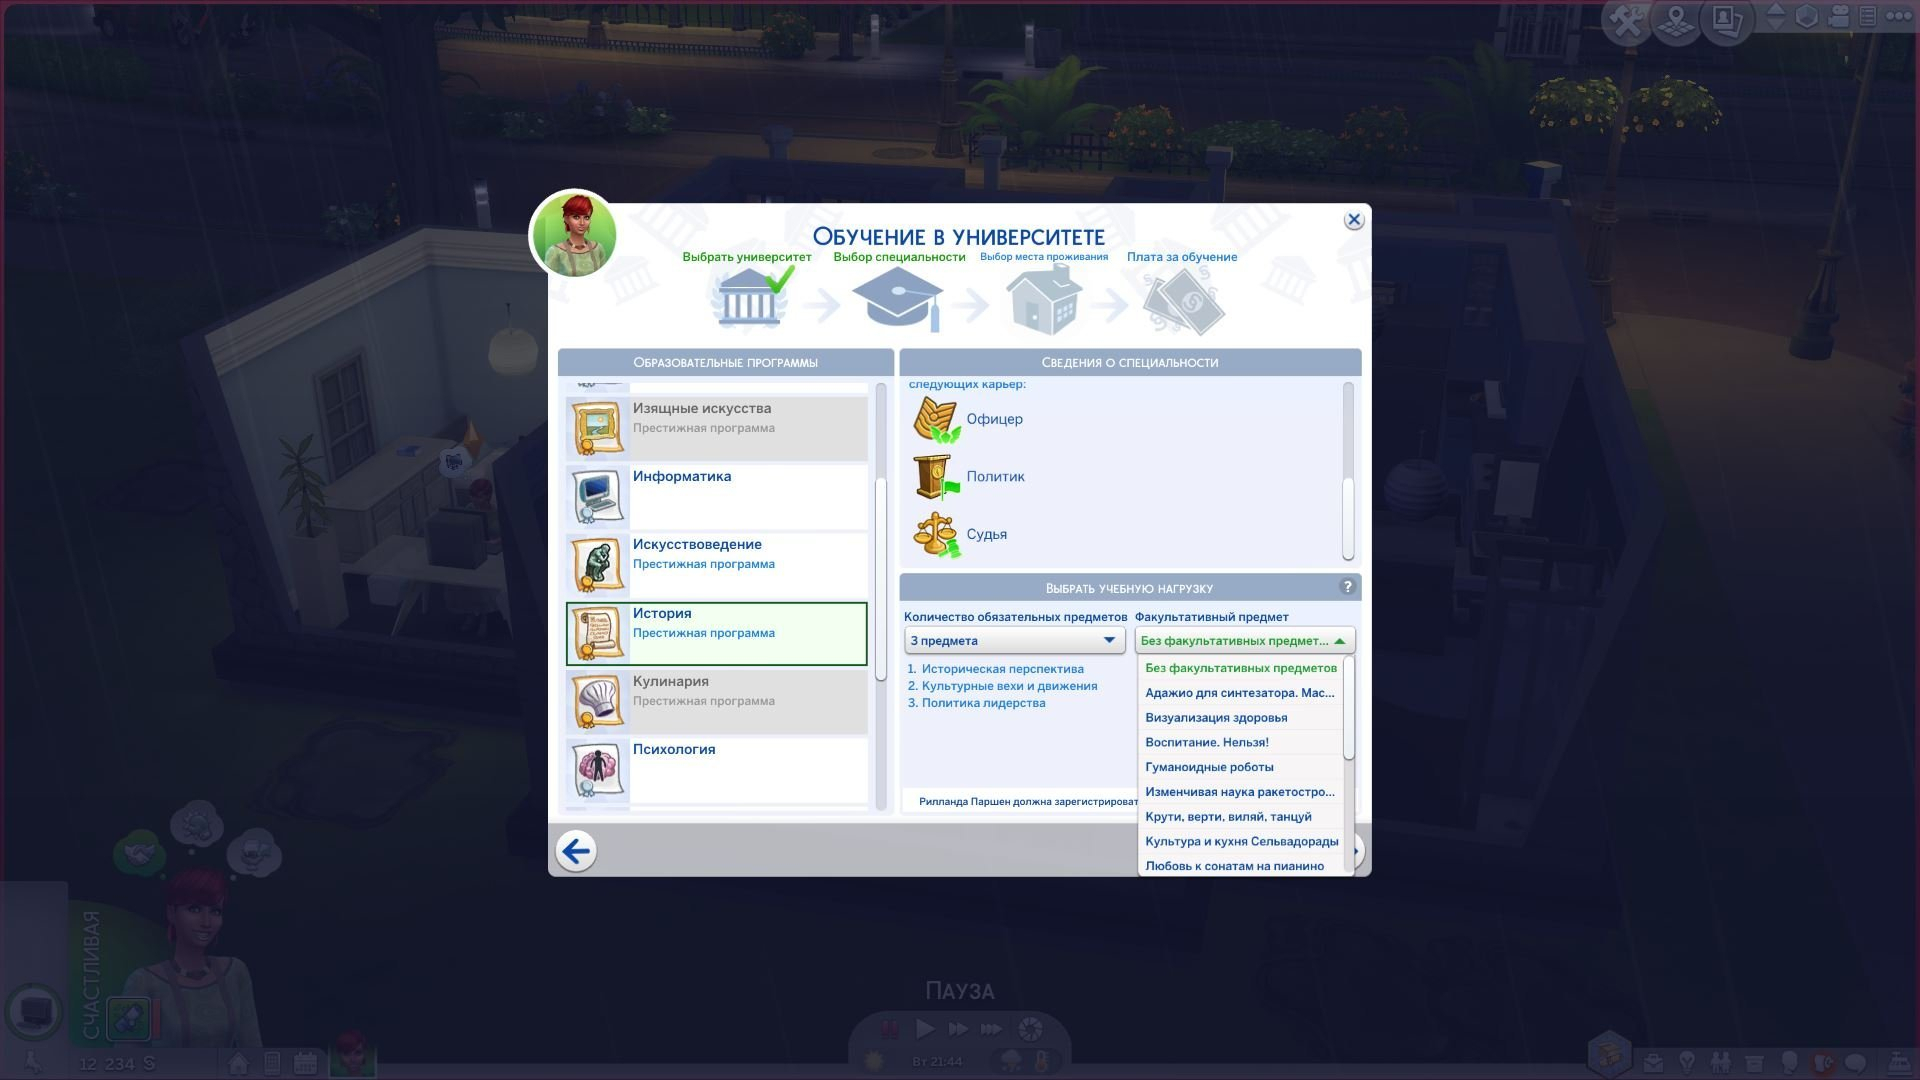 Как Получить Доступ К Престижным Программам Sims 4 В pertaining to Sims 4 Icons 2020